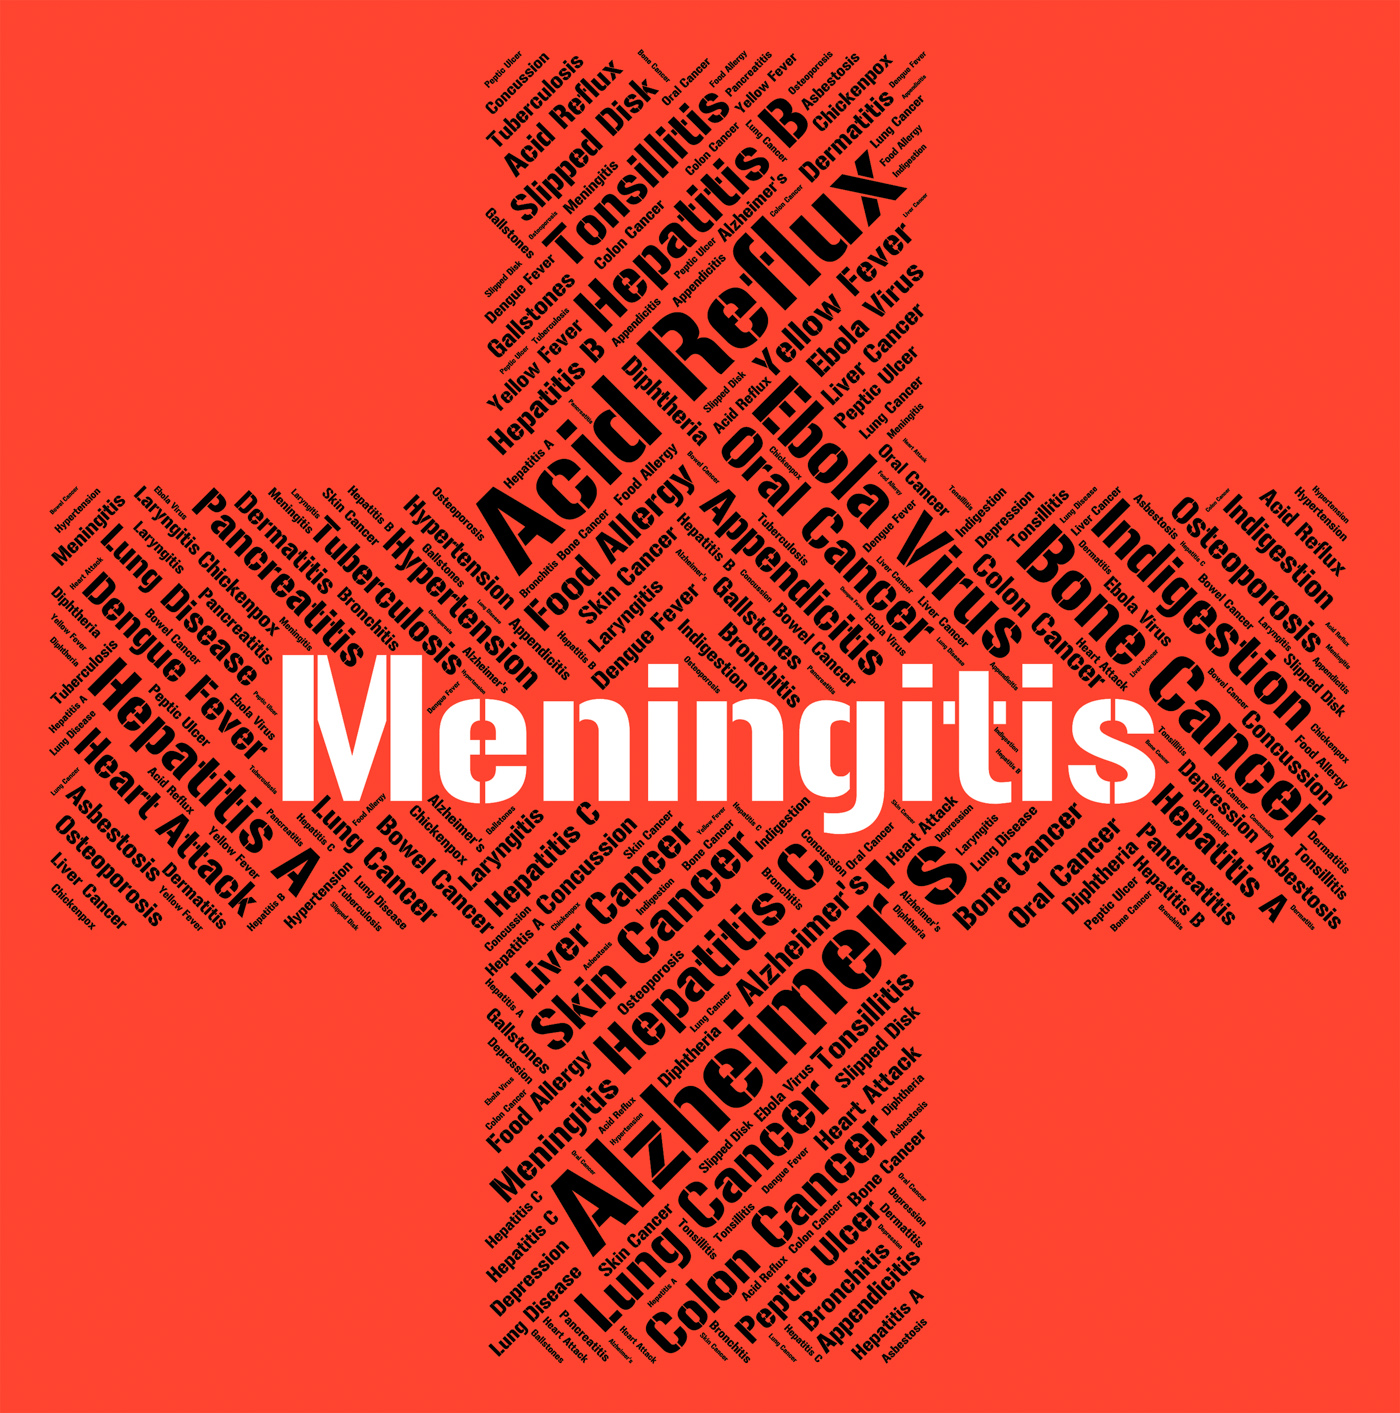 Meningitis word indicates ill health and afflictions photo